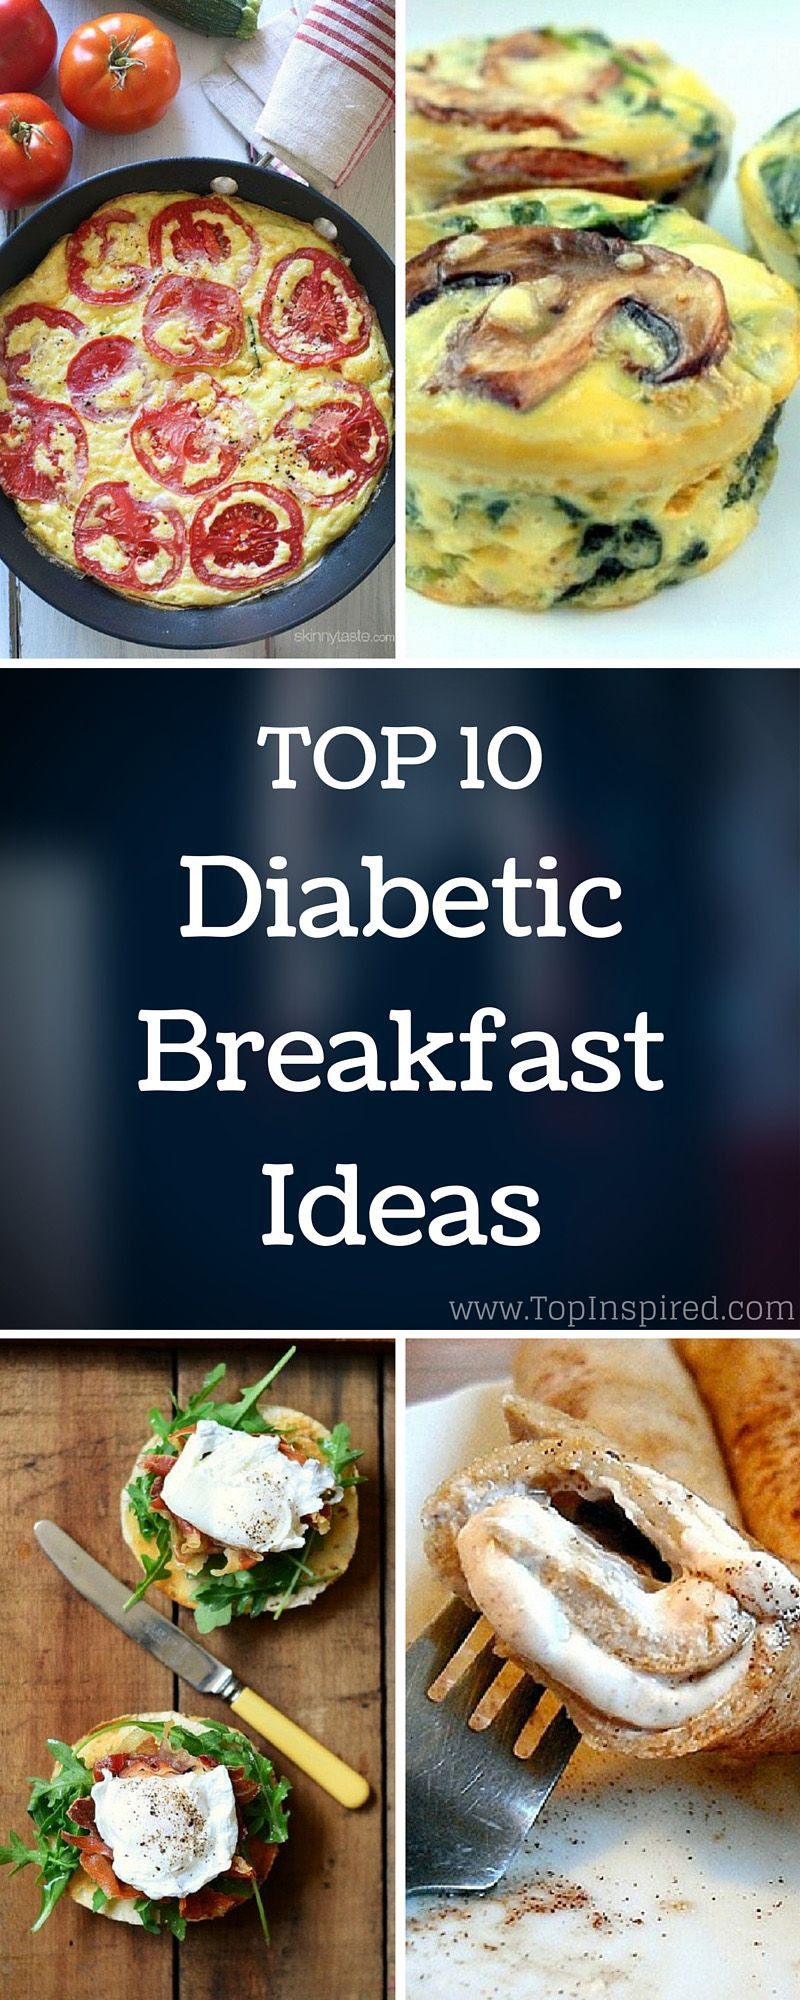 Healthy Breakfast Ideas For Diabetics
 Top 10 Diabetic Breakfast Ideas